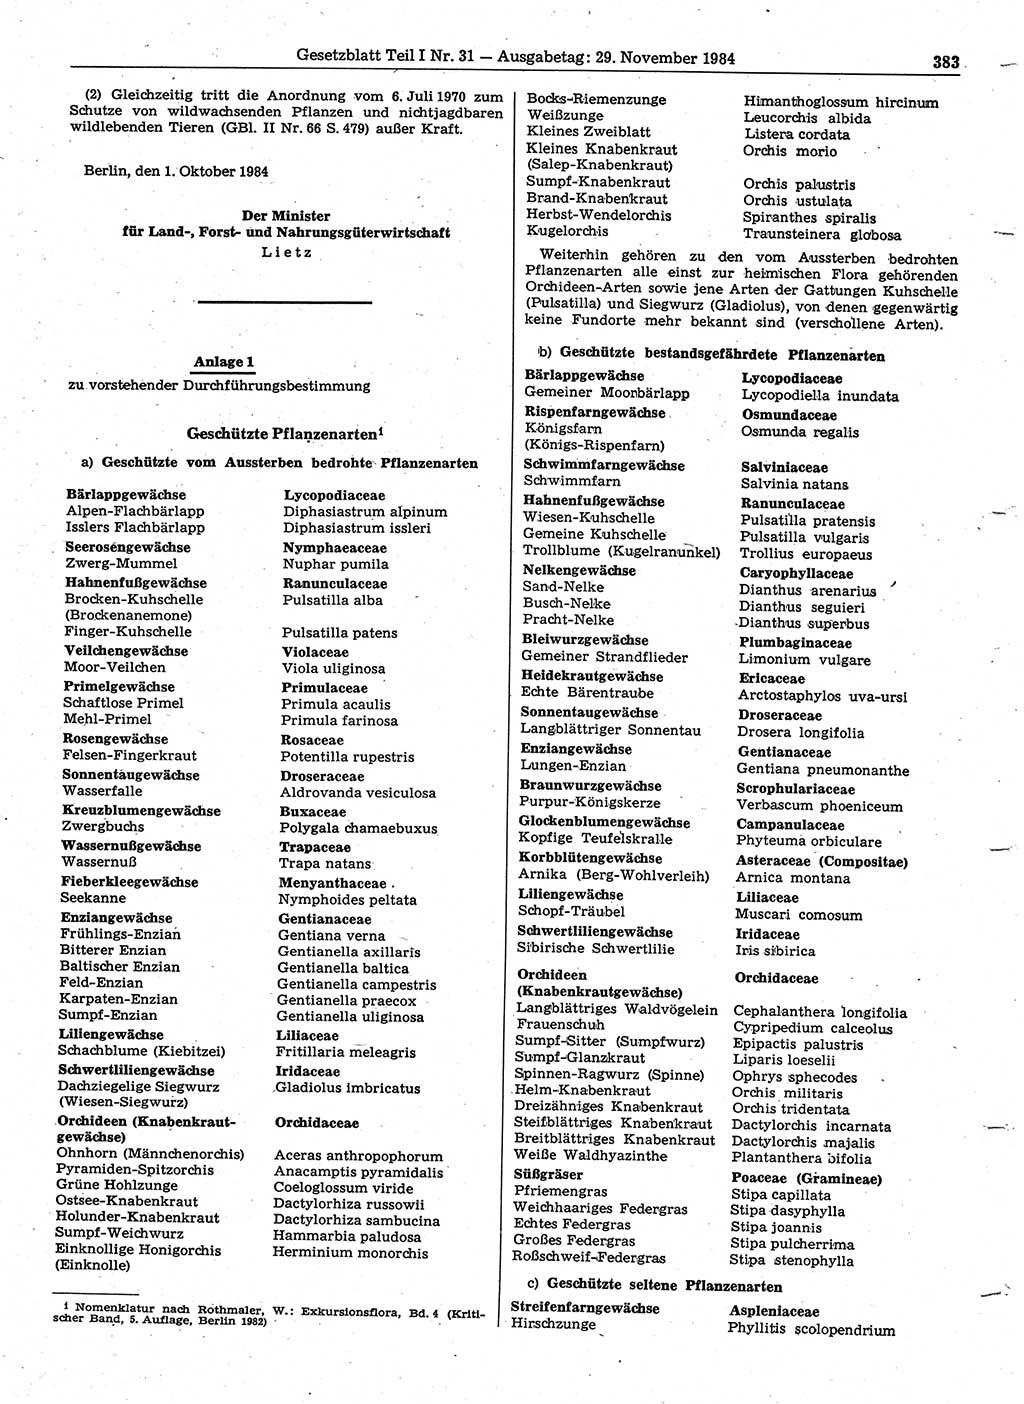 Gesetzblatt (GBl.) der Deutschen Demokratischen Republik (DDR) Teil Ⅰ 1984, Seite 383 (GBl. DDR Ⅰ 1984, S. 383)